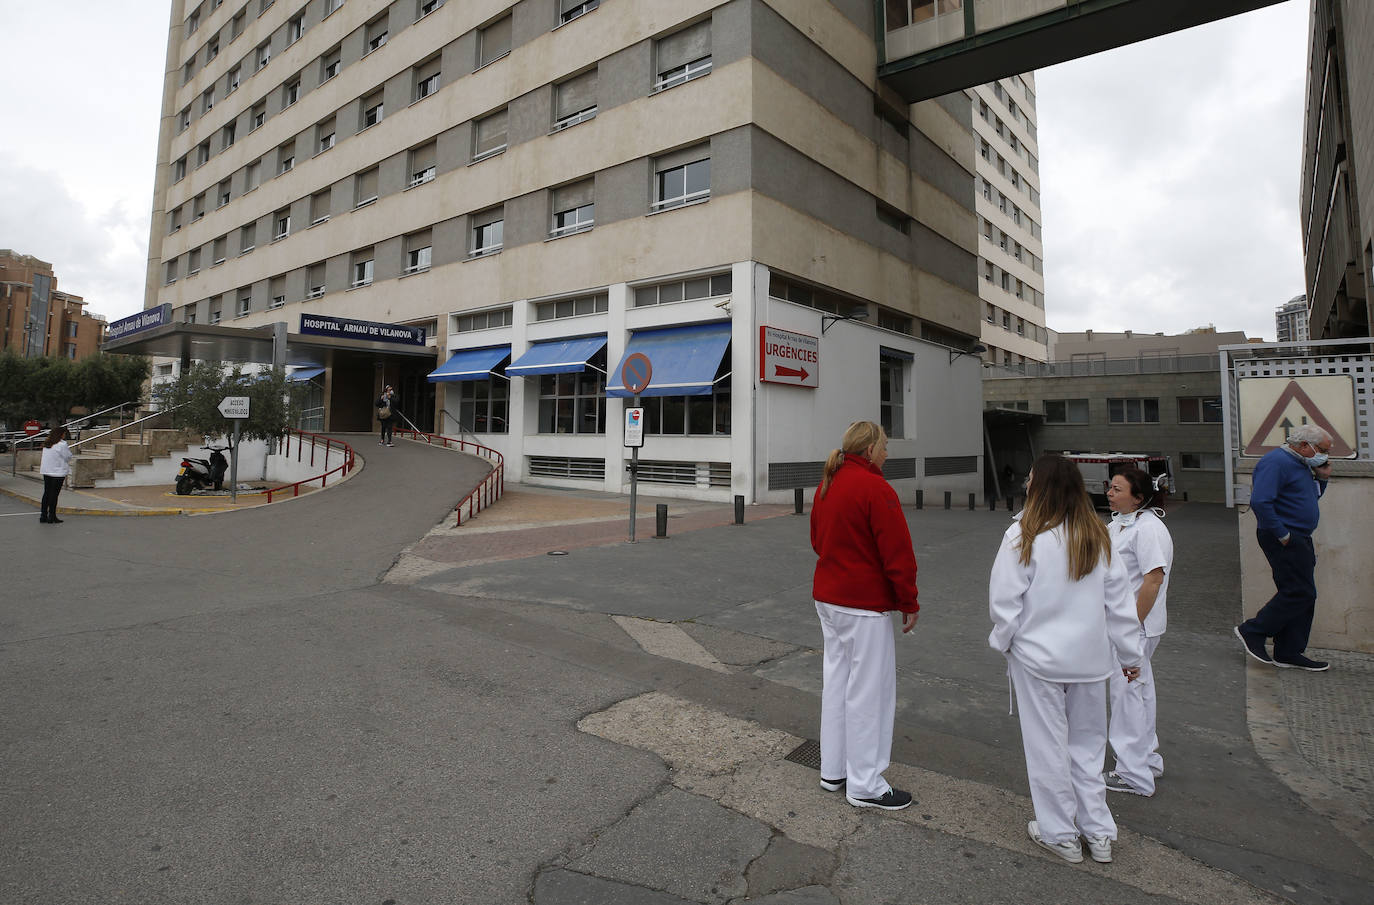 Sanitarios libran desde hace dos semanas una lucha contra el coronavirus en los diferentes hospitales de la Comunitat Valencia. Cada tarde, a las 20.00 horas, reciben el aplauso de los vecinos confinados desde sus balcones y de las fuerzas de seguridad.